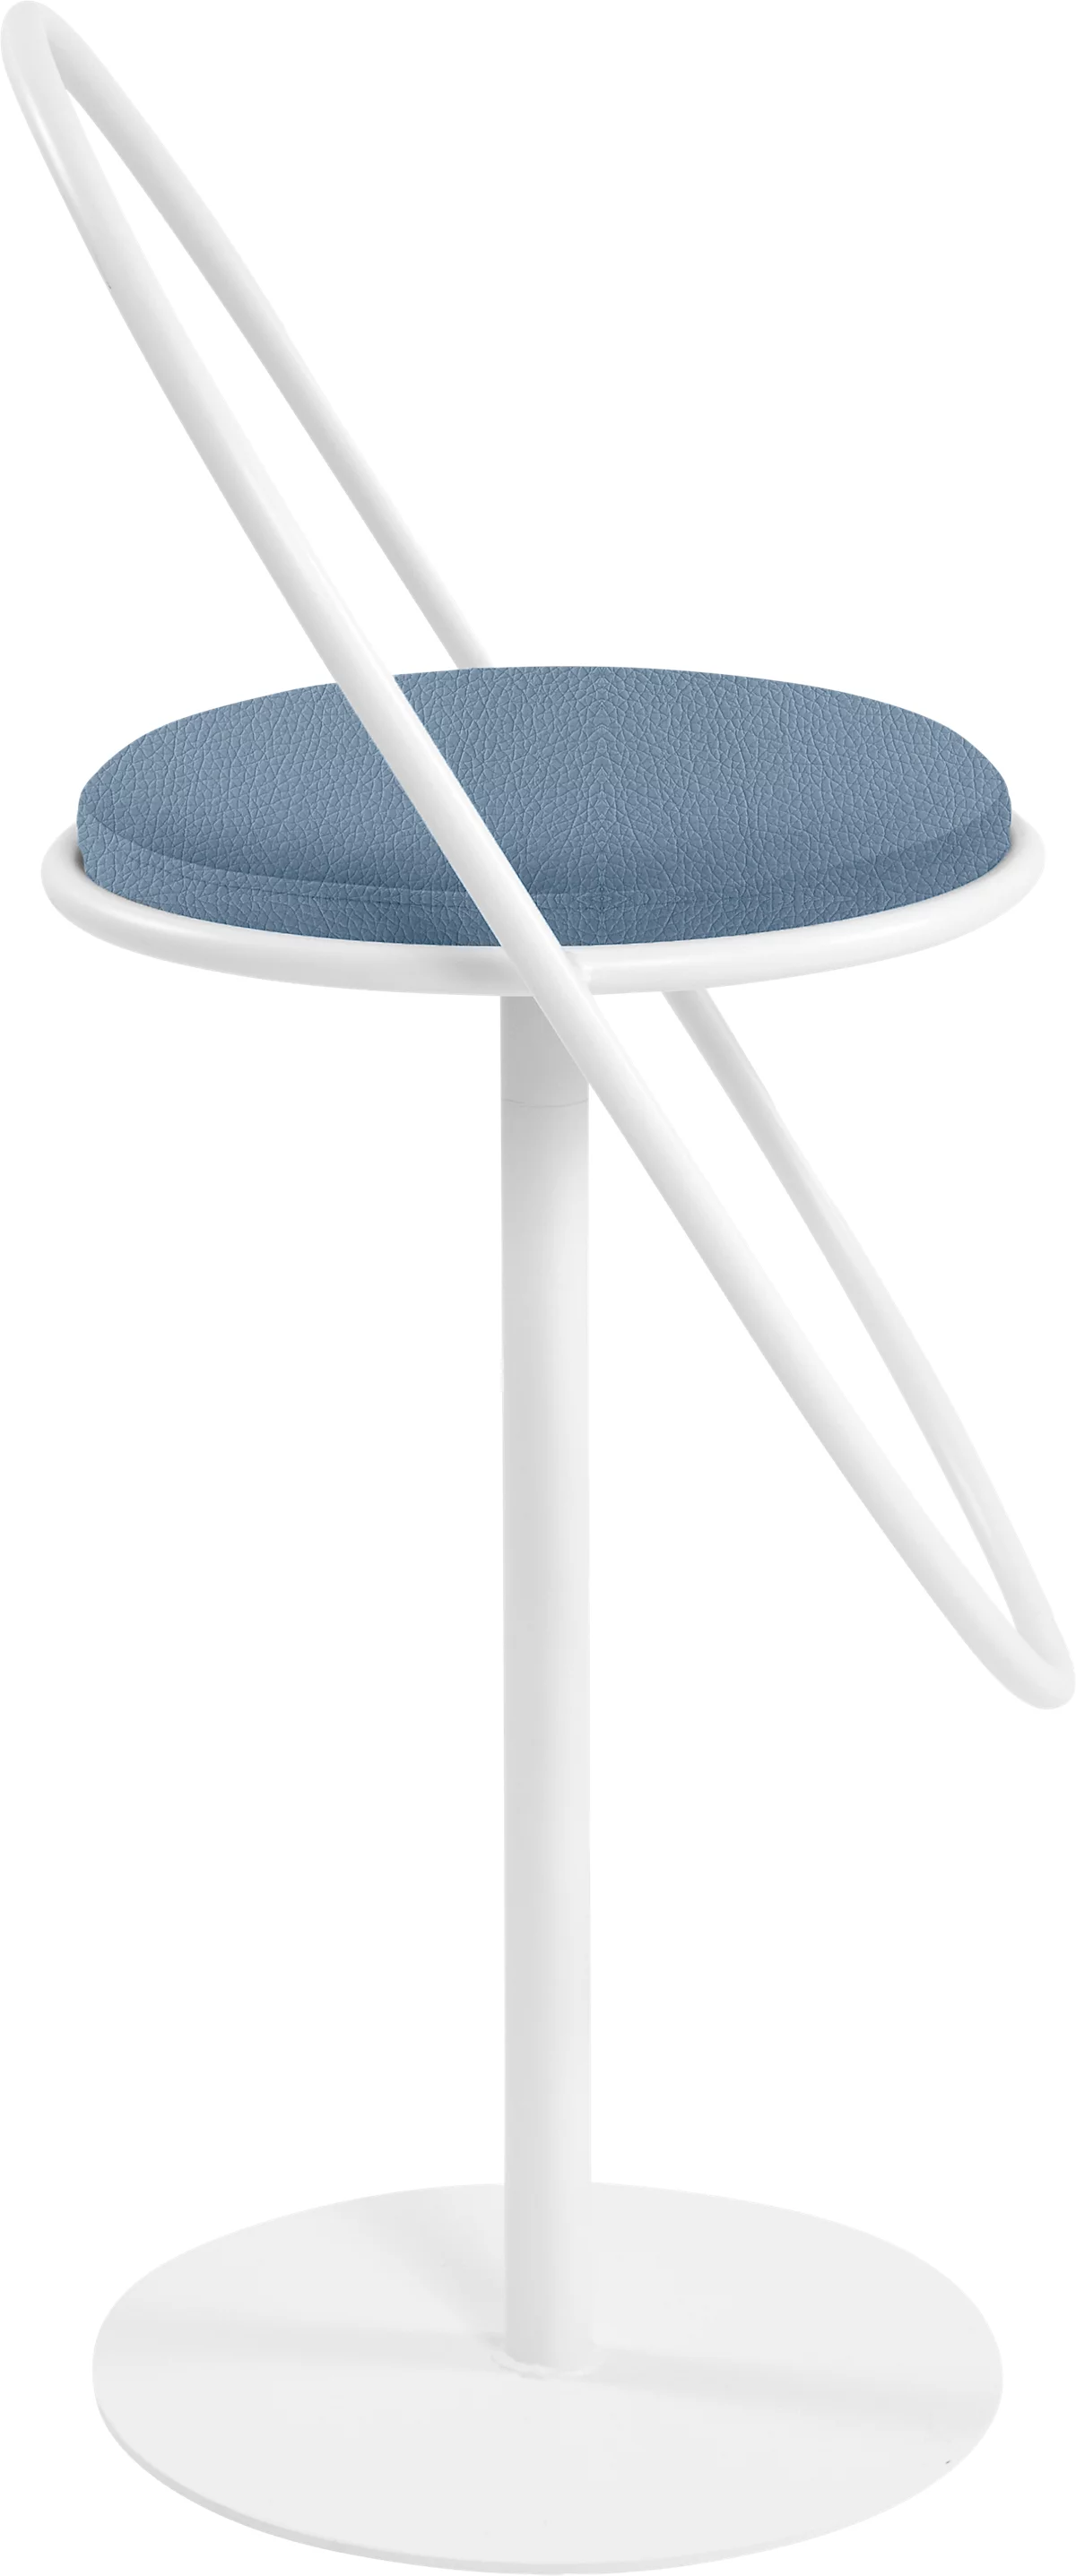 Barhocker Paperflow Saturne, mit Rückenlehne, Sitzhöhe 765 mm, gepolstert, zu 100 % recycelbar, Kunstlederbezug blau, Gestell weiß